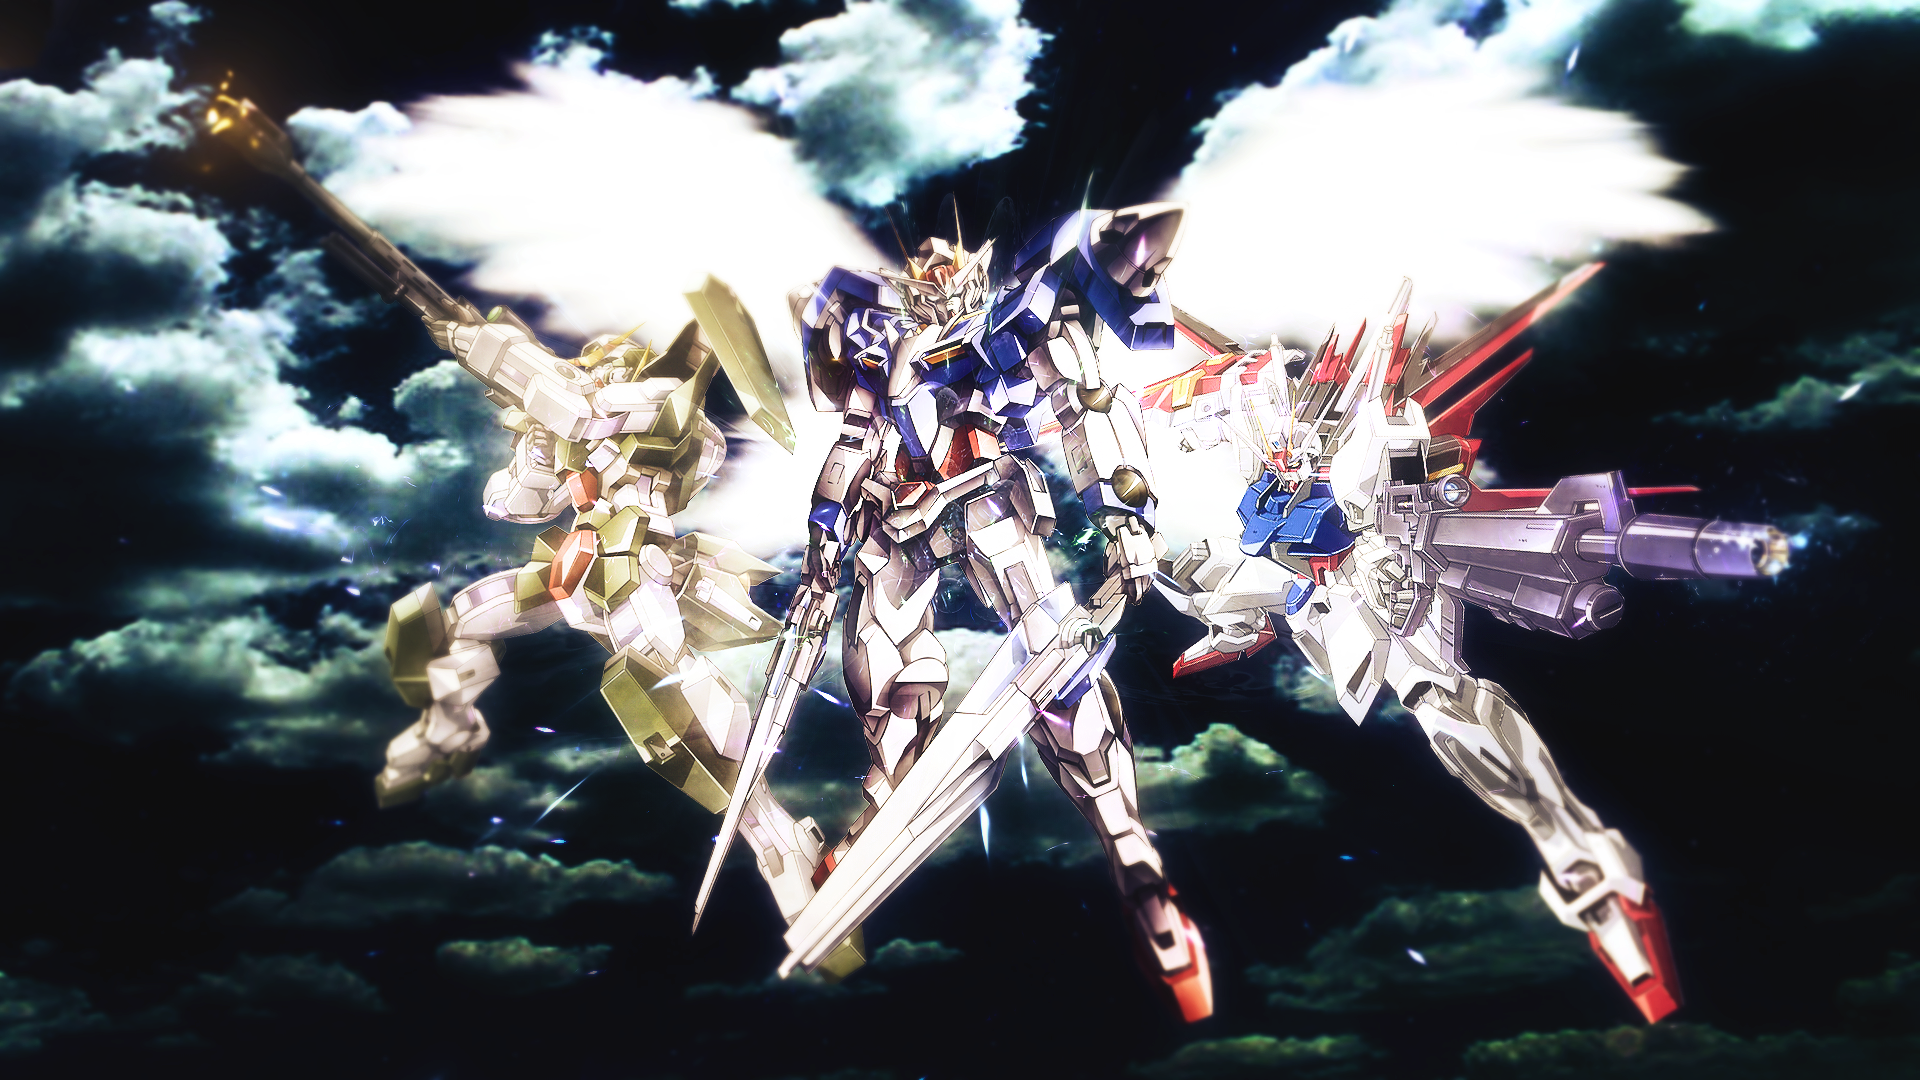 Gundam Wallpapers 1080p - WallpaperSafari